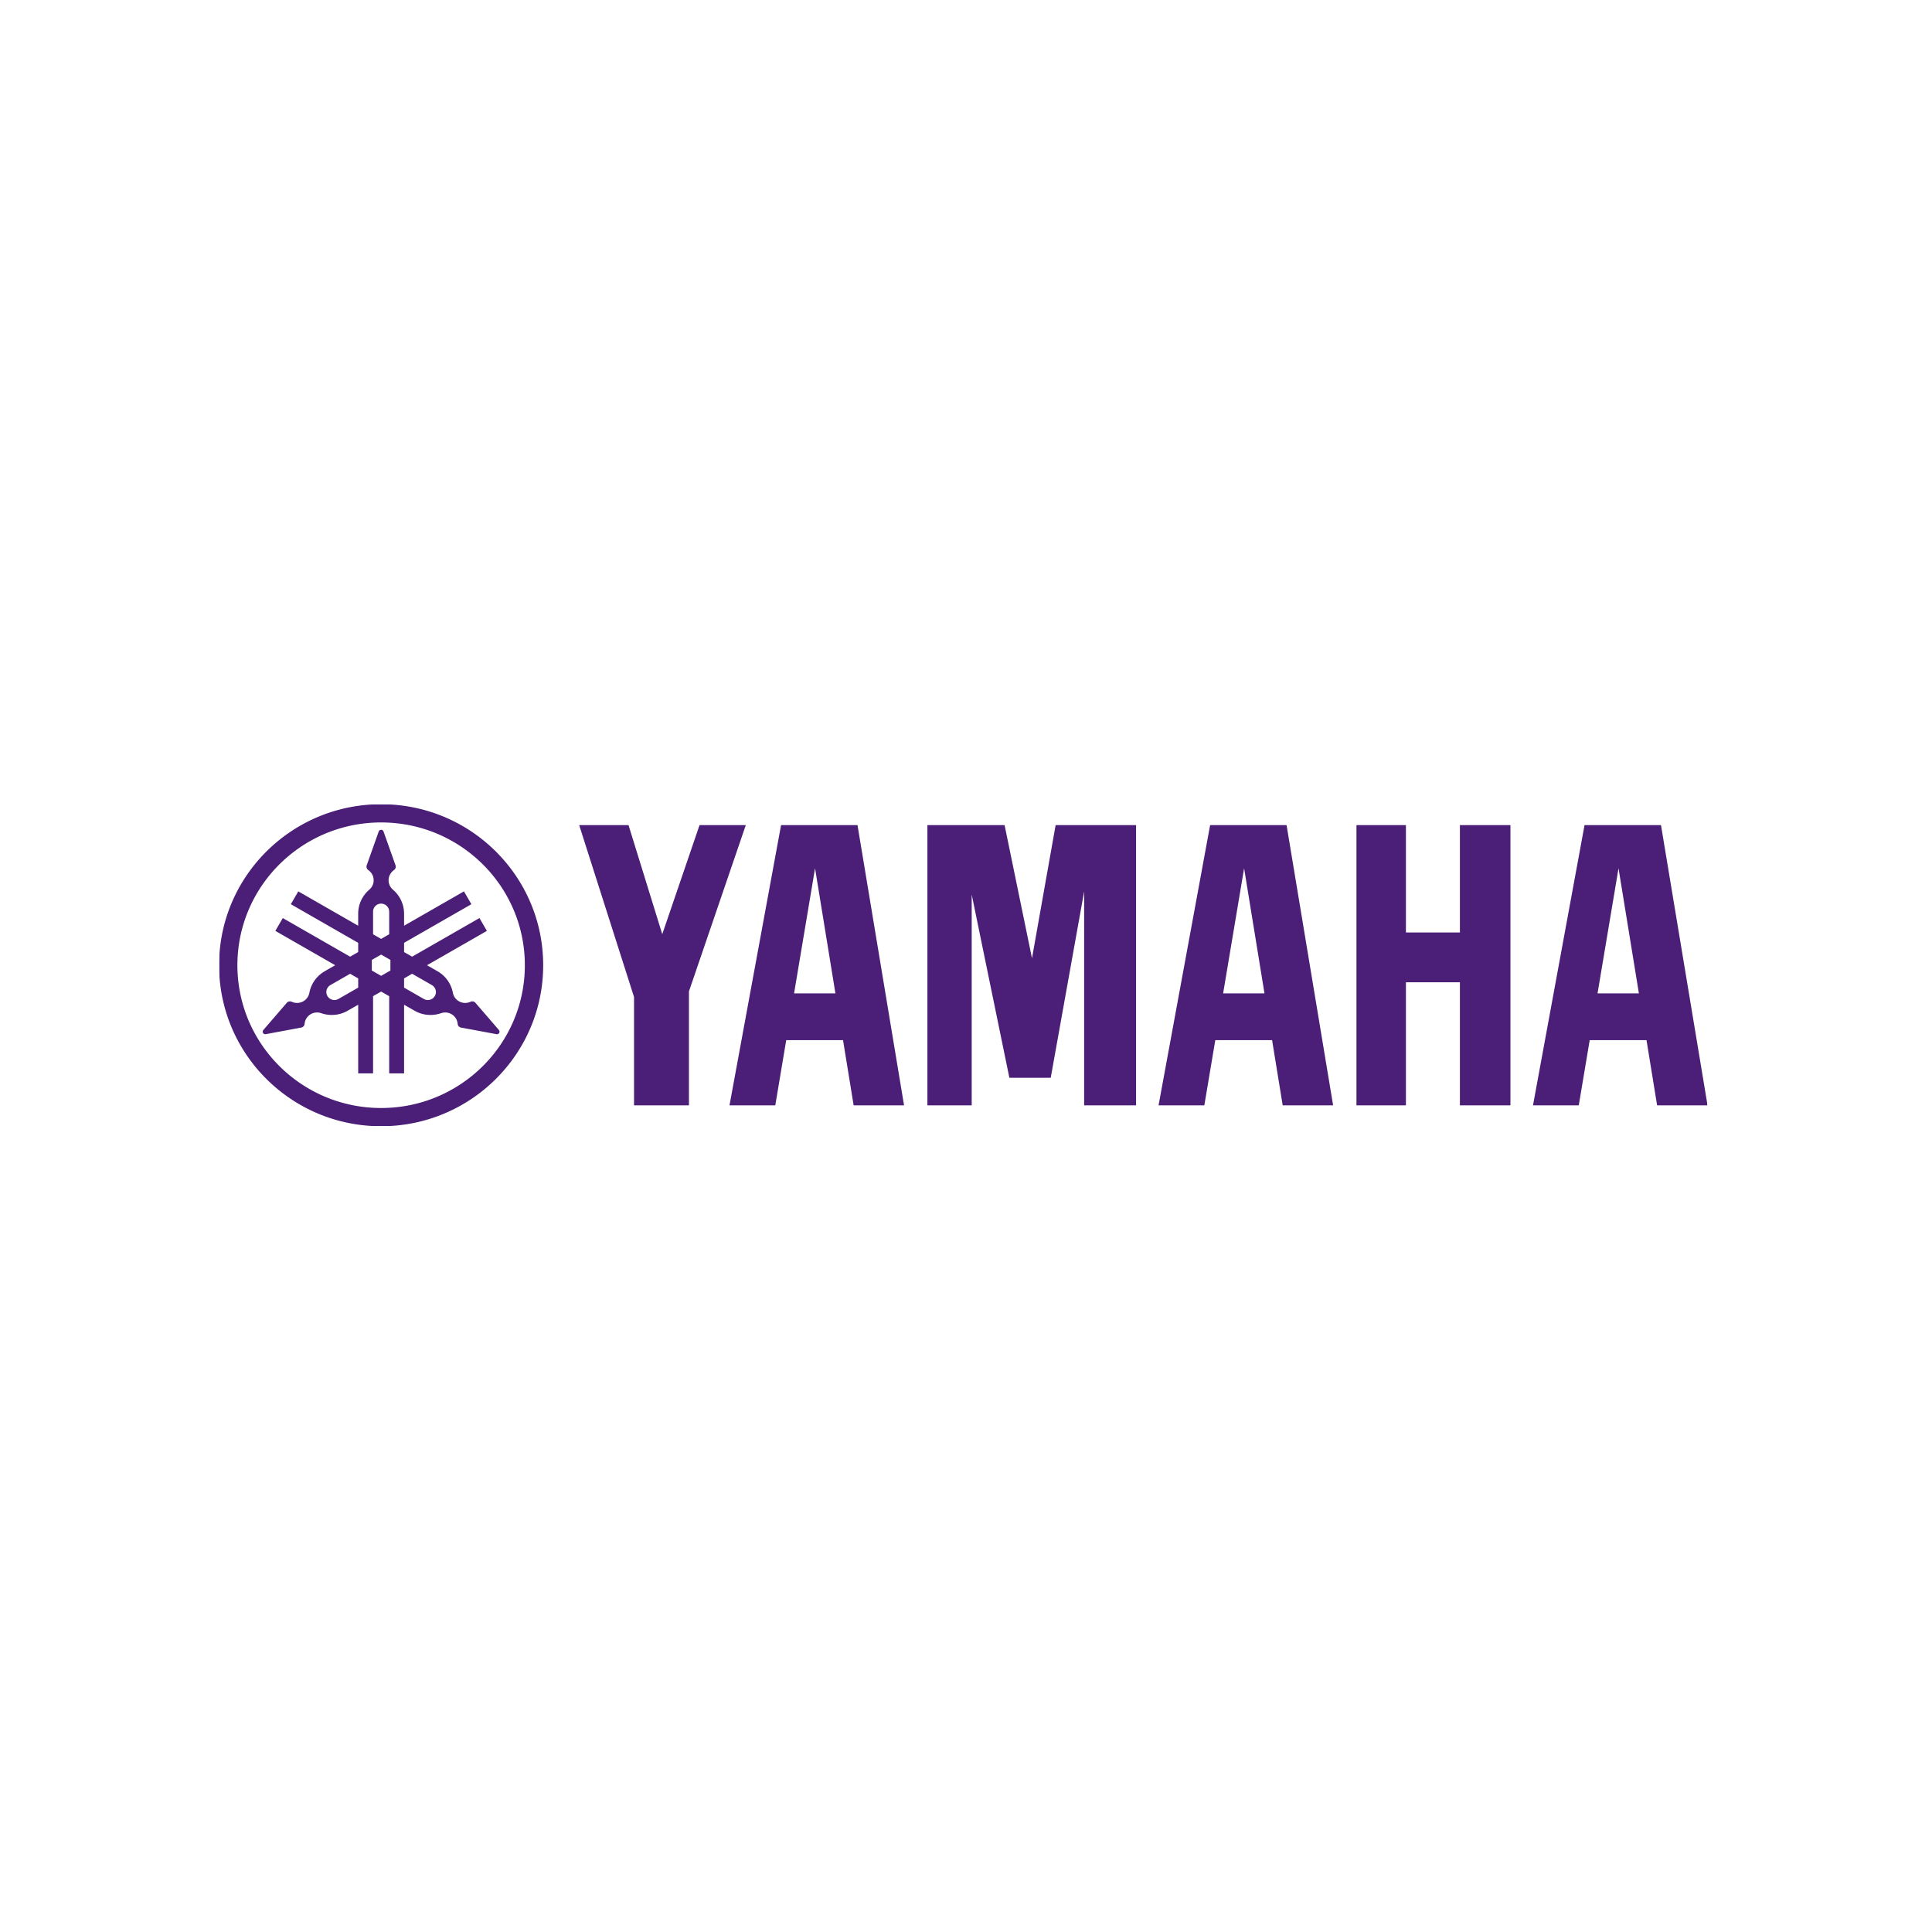  YAMAHA | コンピュータのおっとサーバ店 日本屈指のPCサーバ専門店。ご提案～販売～構築～サポート～修理までお気軽にご相談ください